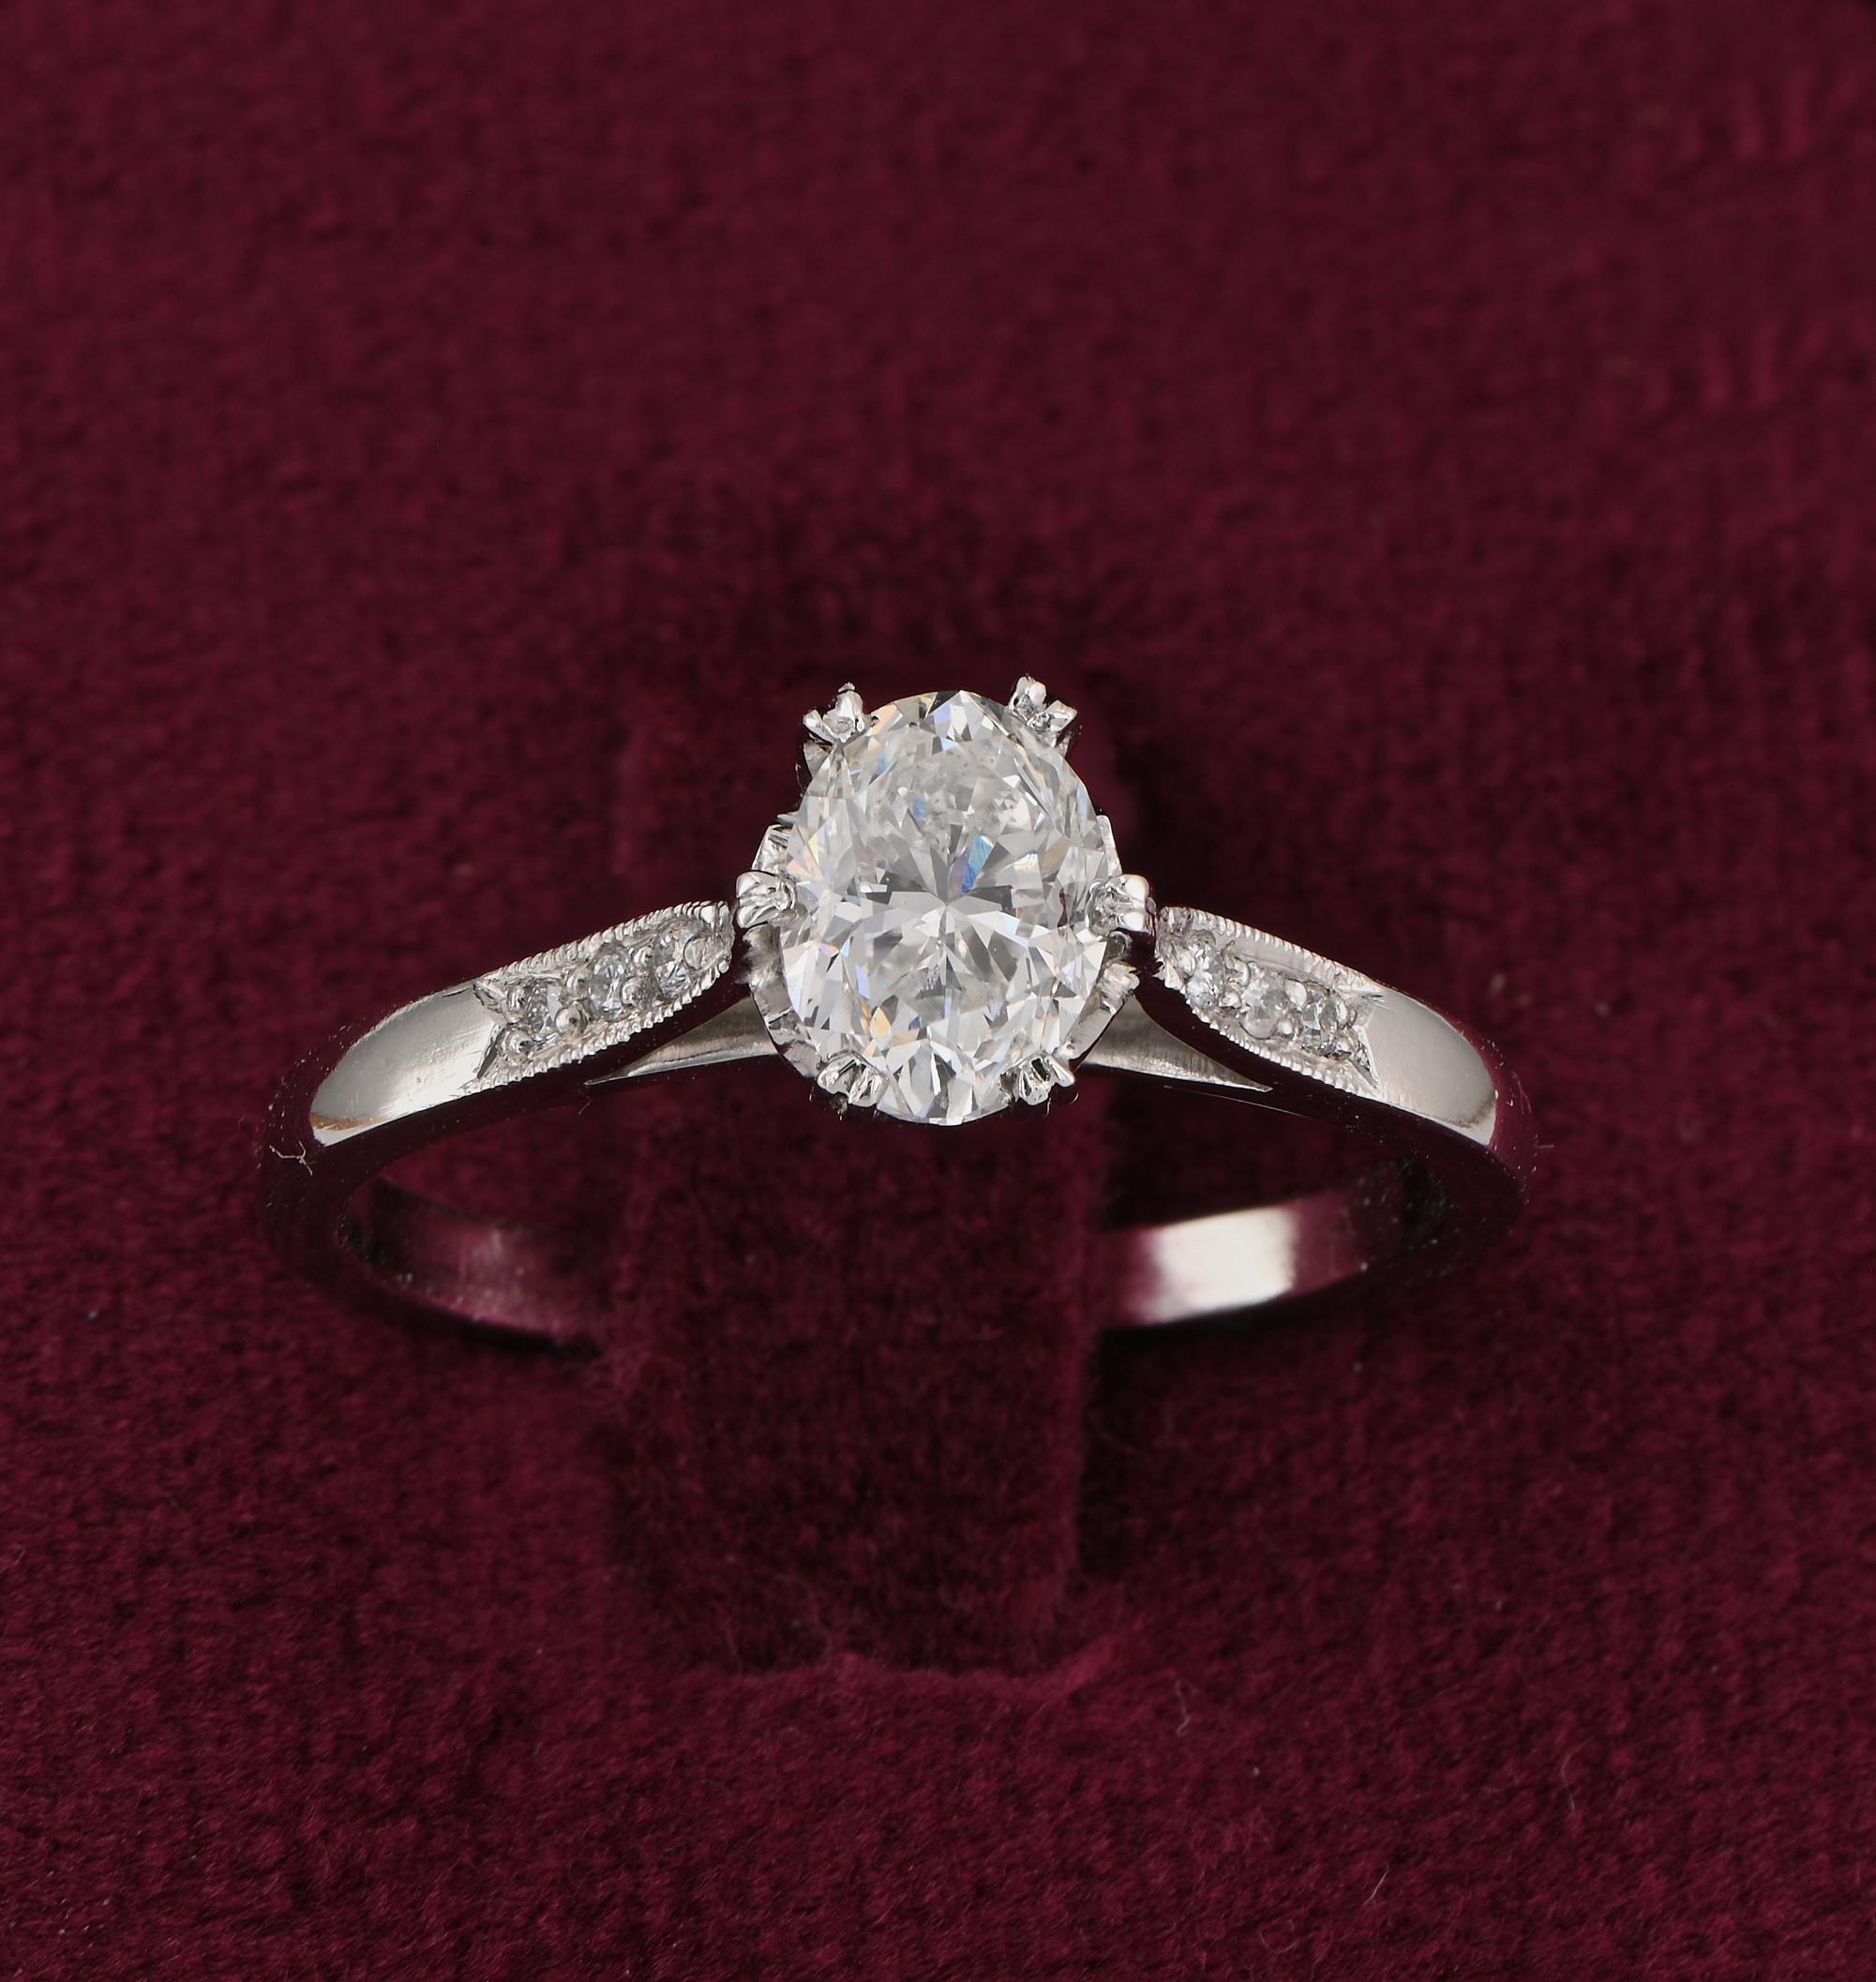 Diamant pour toujours
Cette charmante bague solitaire en diamant de style Art déco date des années 1920.
Exquise fabrication à la main, unique en son genre, d'or massif 18 KT surmonté de platine.
Un design élégant, en vogue à l'époque, avec une